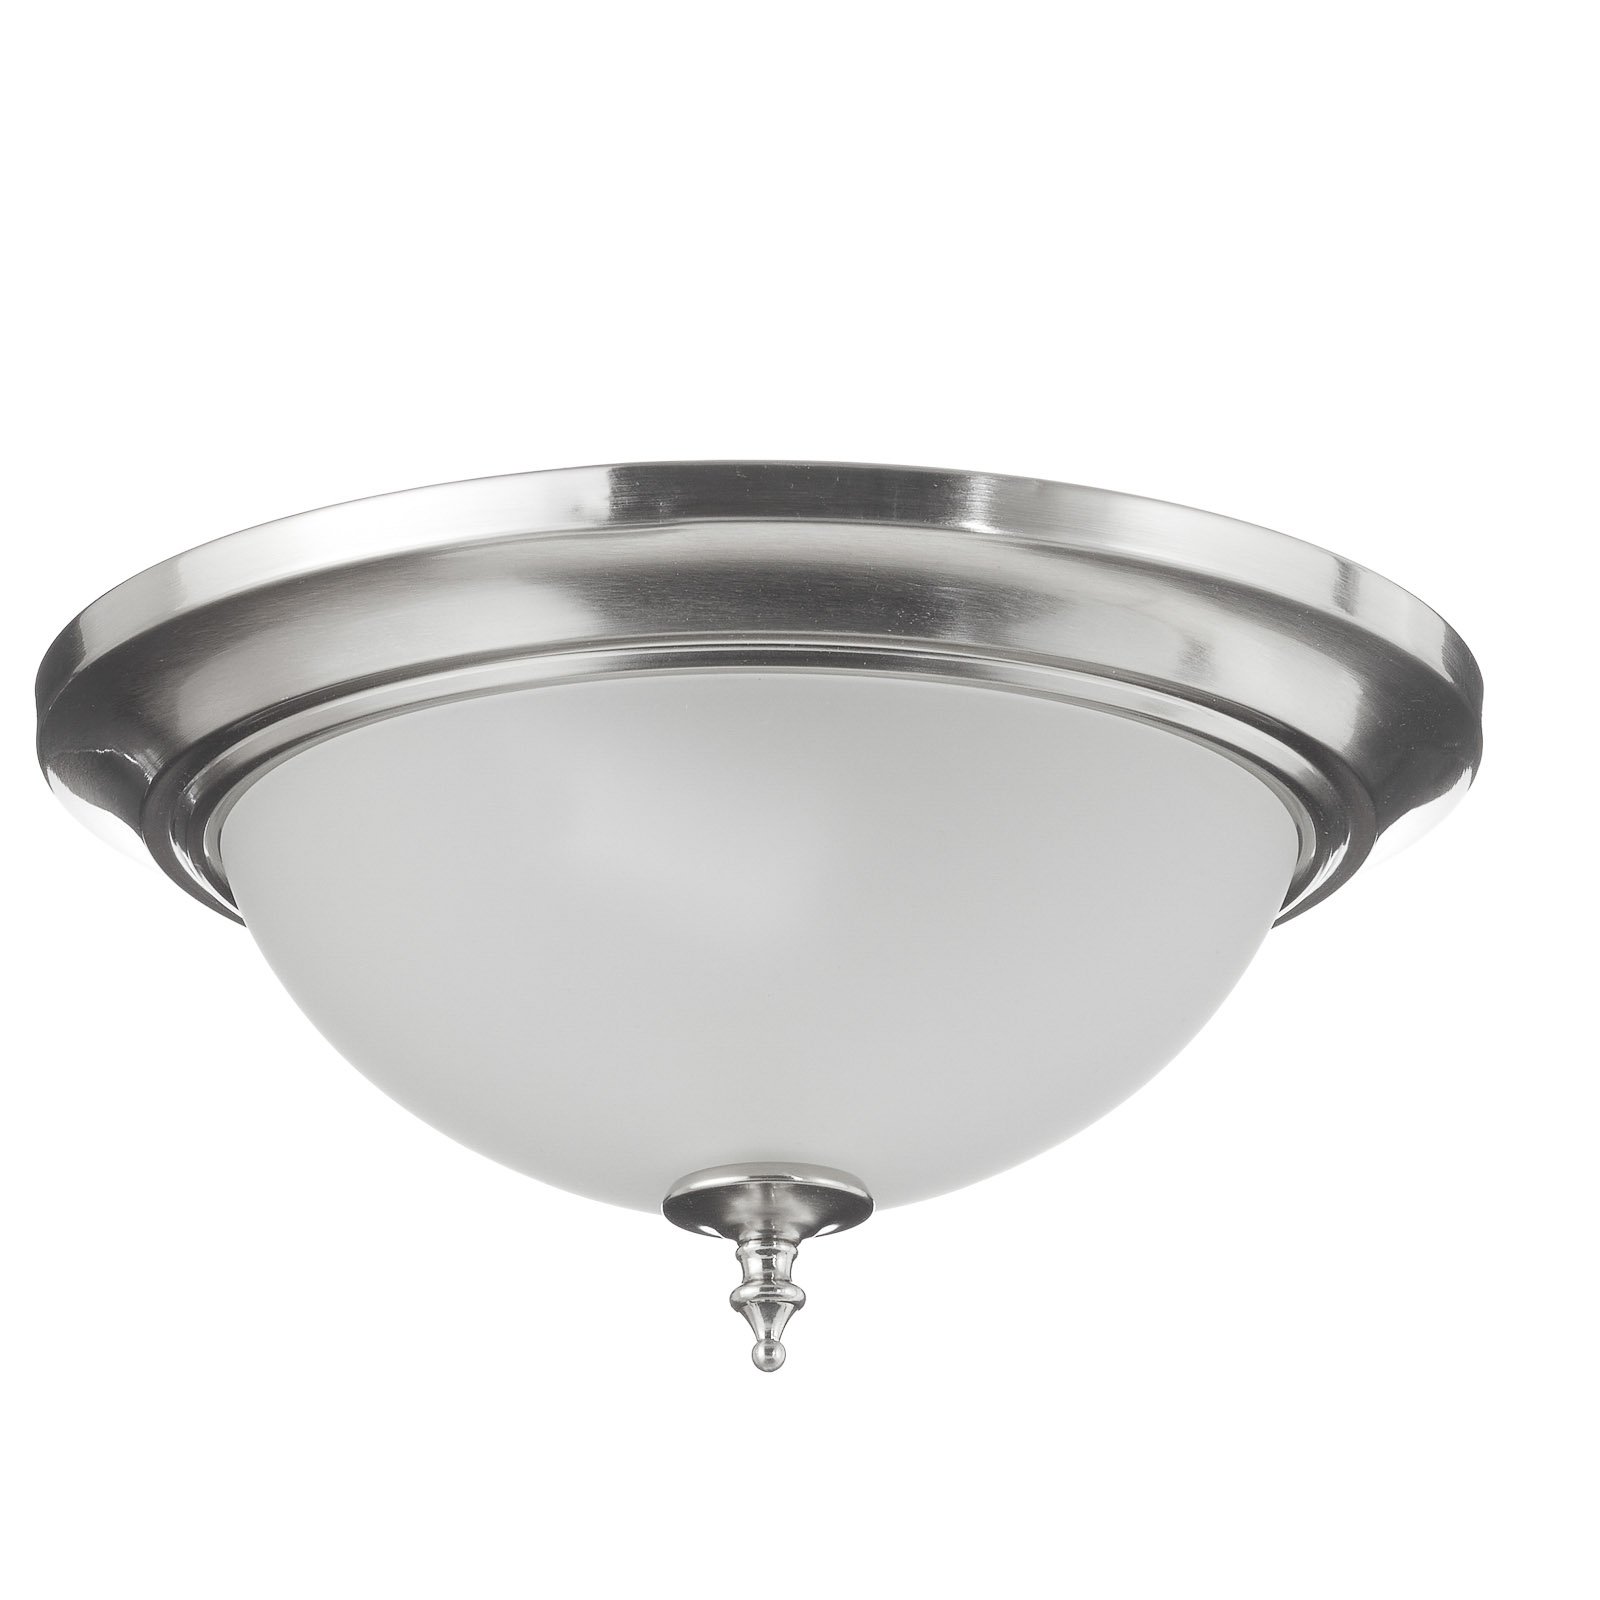 Westinghouse Harwell plafondlamp, nikkel